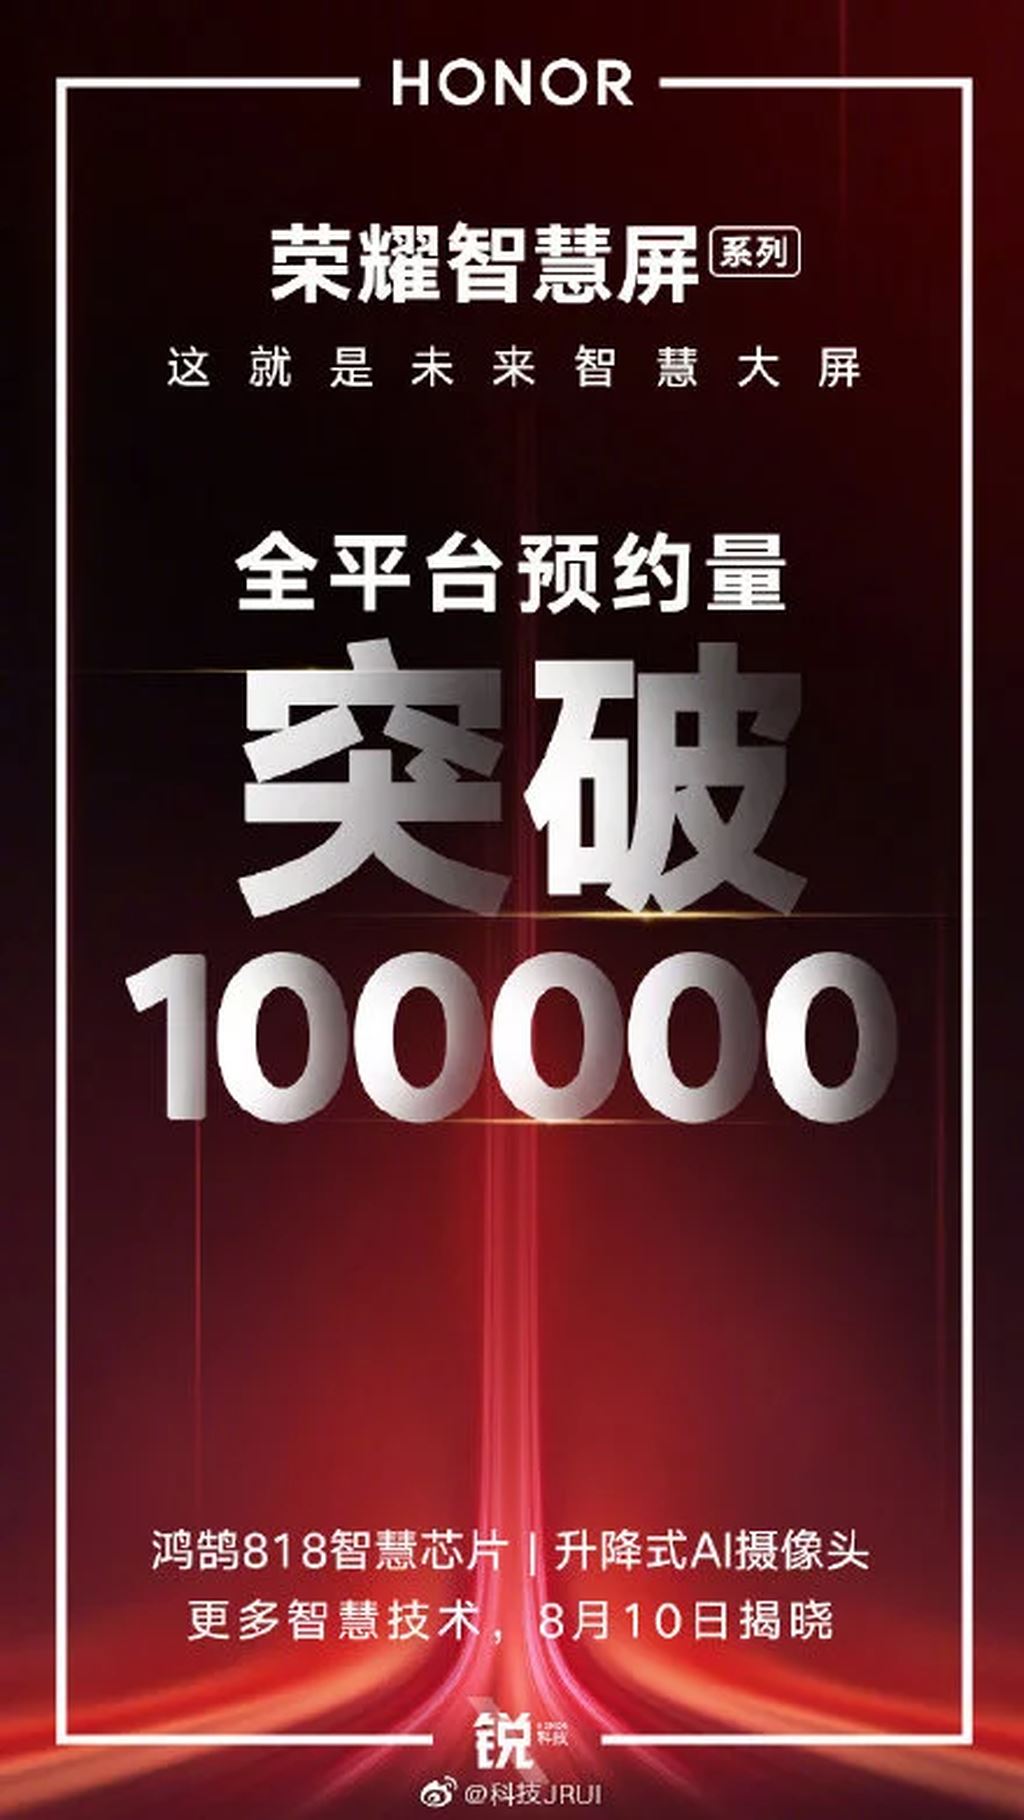 Honor Smart Screen TV đã có hơn 100.000 đơn đặt hàng trước ngày ra mắt ảnh 1